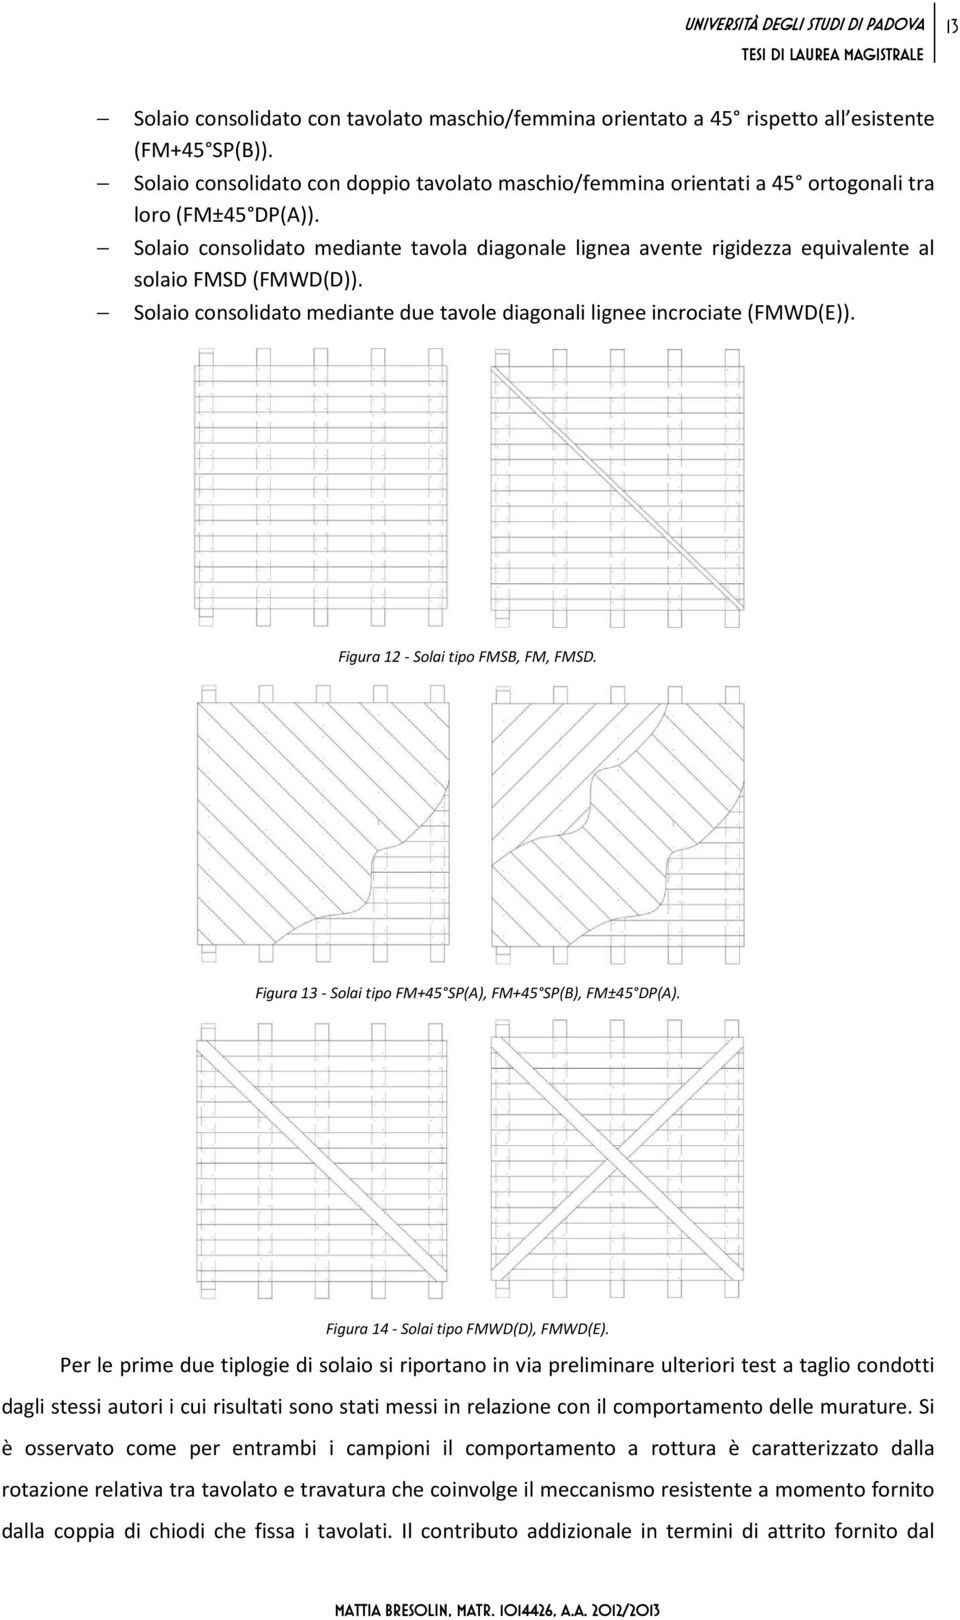 Solaio consolidato mediante tavola diagonale lignea avente rigidezza equivalente al solaio FMSD (FMWD(D)). Solaio consolidato mediante due tavole diagonali lignee incrociate (FMWD(E)).